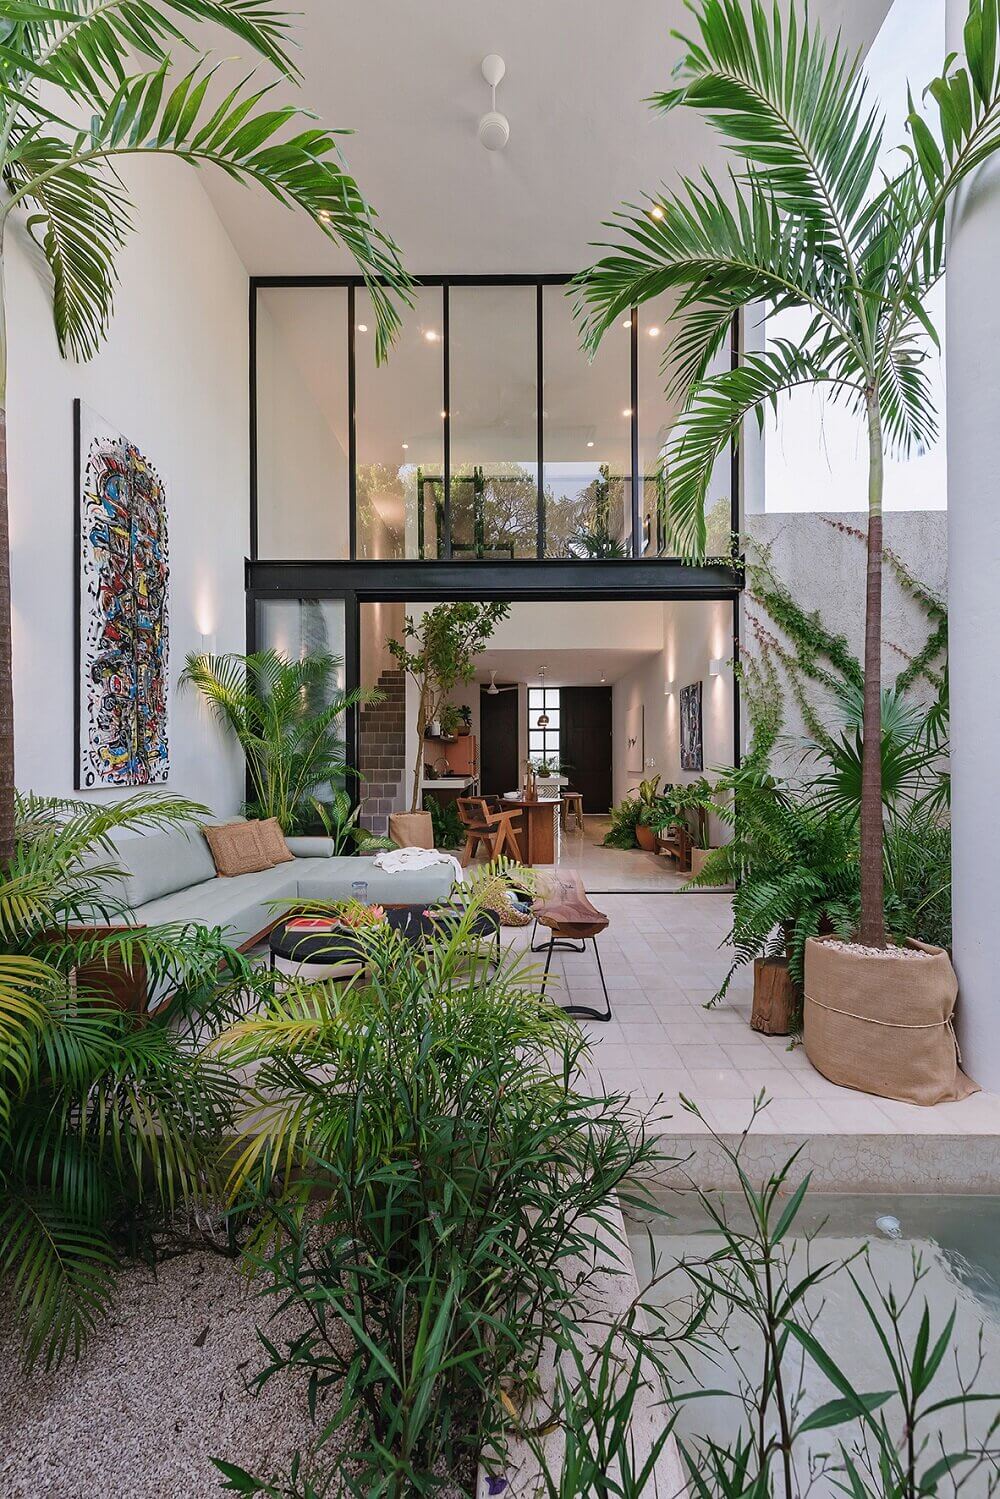 CasaHannah AnArchitecturalVillainMexico TheNordroom13 Casa Hannah | An Architectural Indoor/Outdoor Villa in Mexico